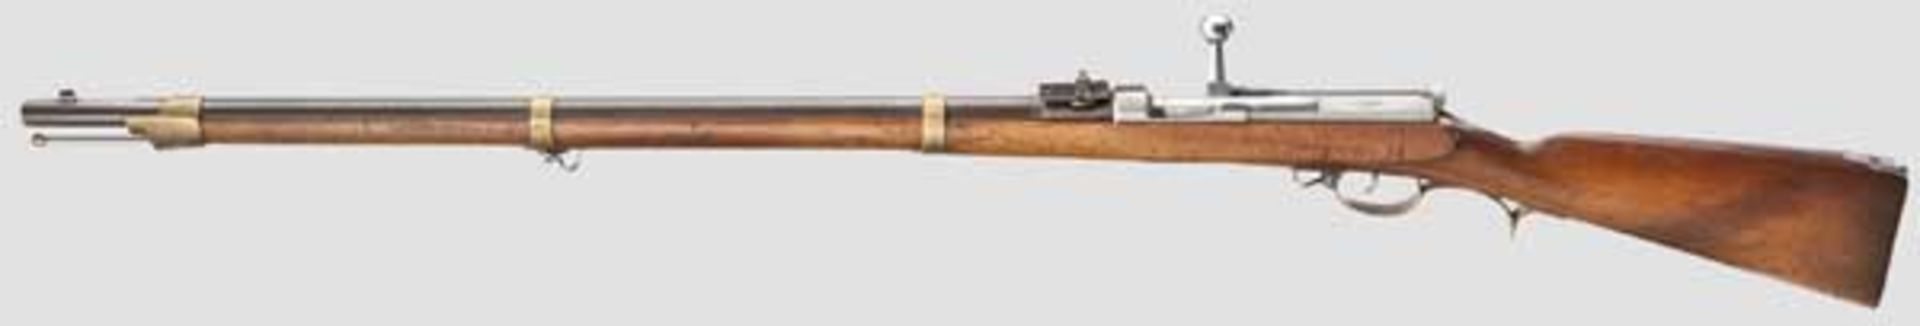 Zündnadelgewehr M 1862 Kaliber 15,4 mm, Nummer 4274, nummerngleich (inkl. der Schrauben). Brünierter - Bild 2 aus 4